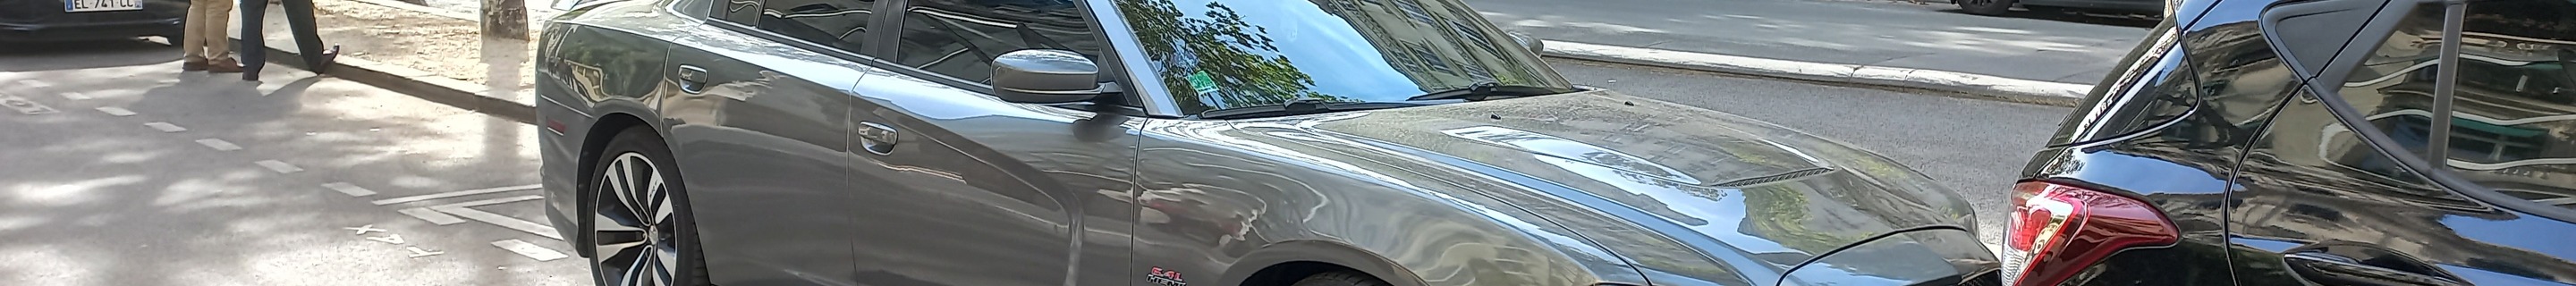 Dodge Charger SRT-8 2012